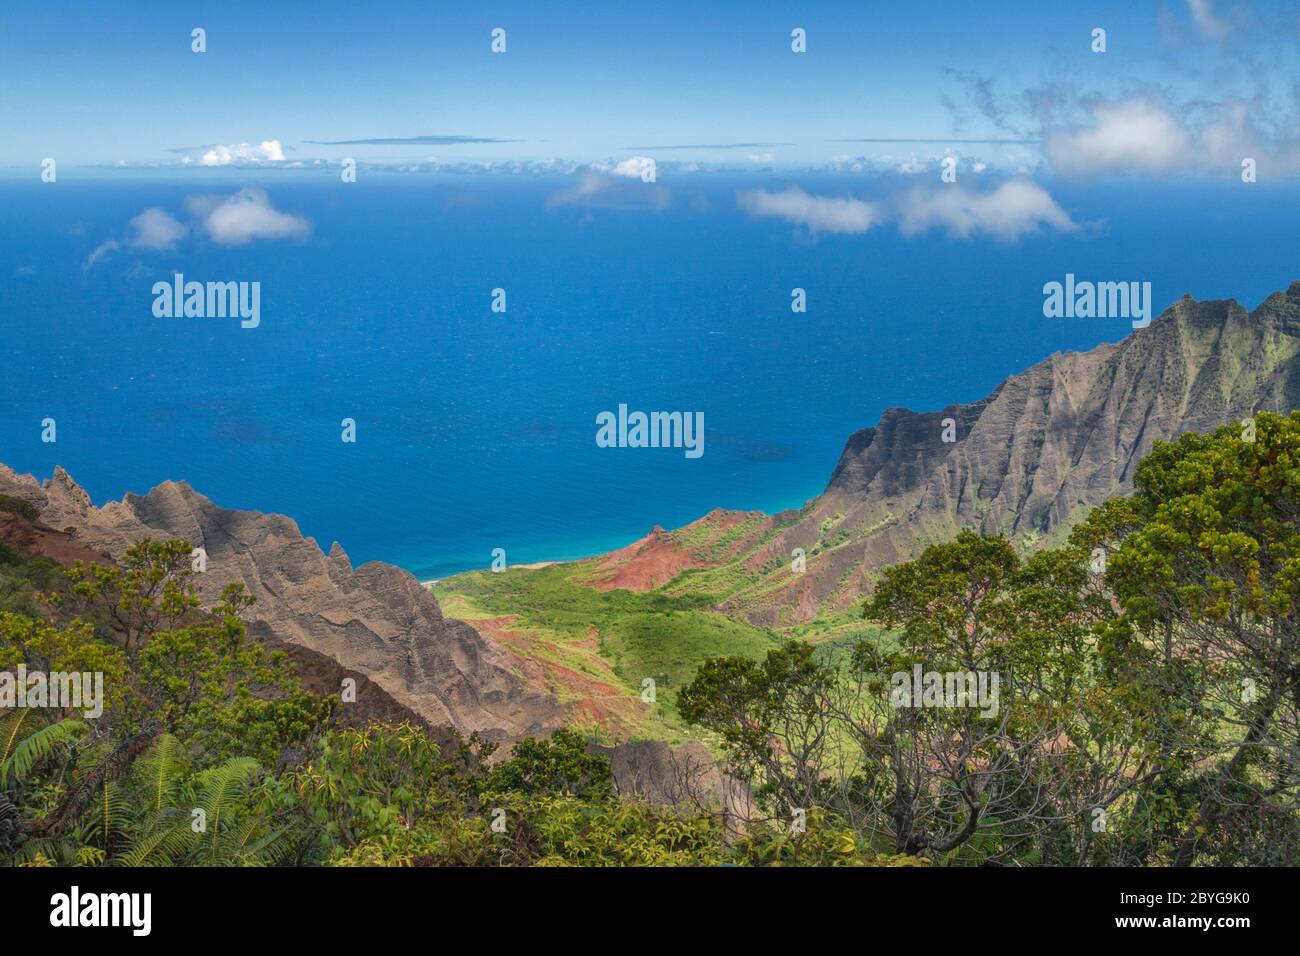 La beauté de la côte de napali, le style de vie et la faune d'Hawaï Banque D'Images